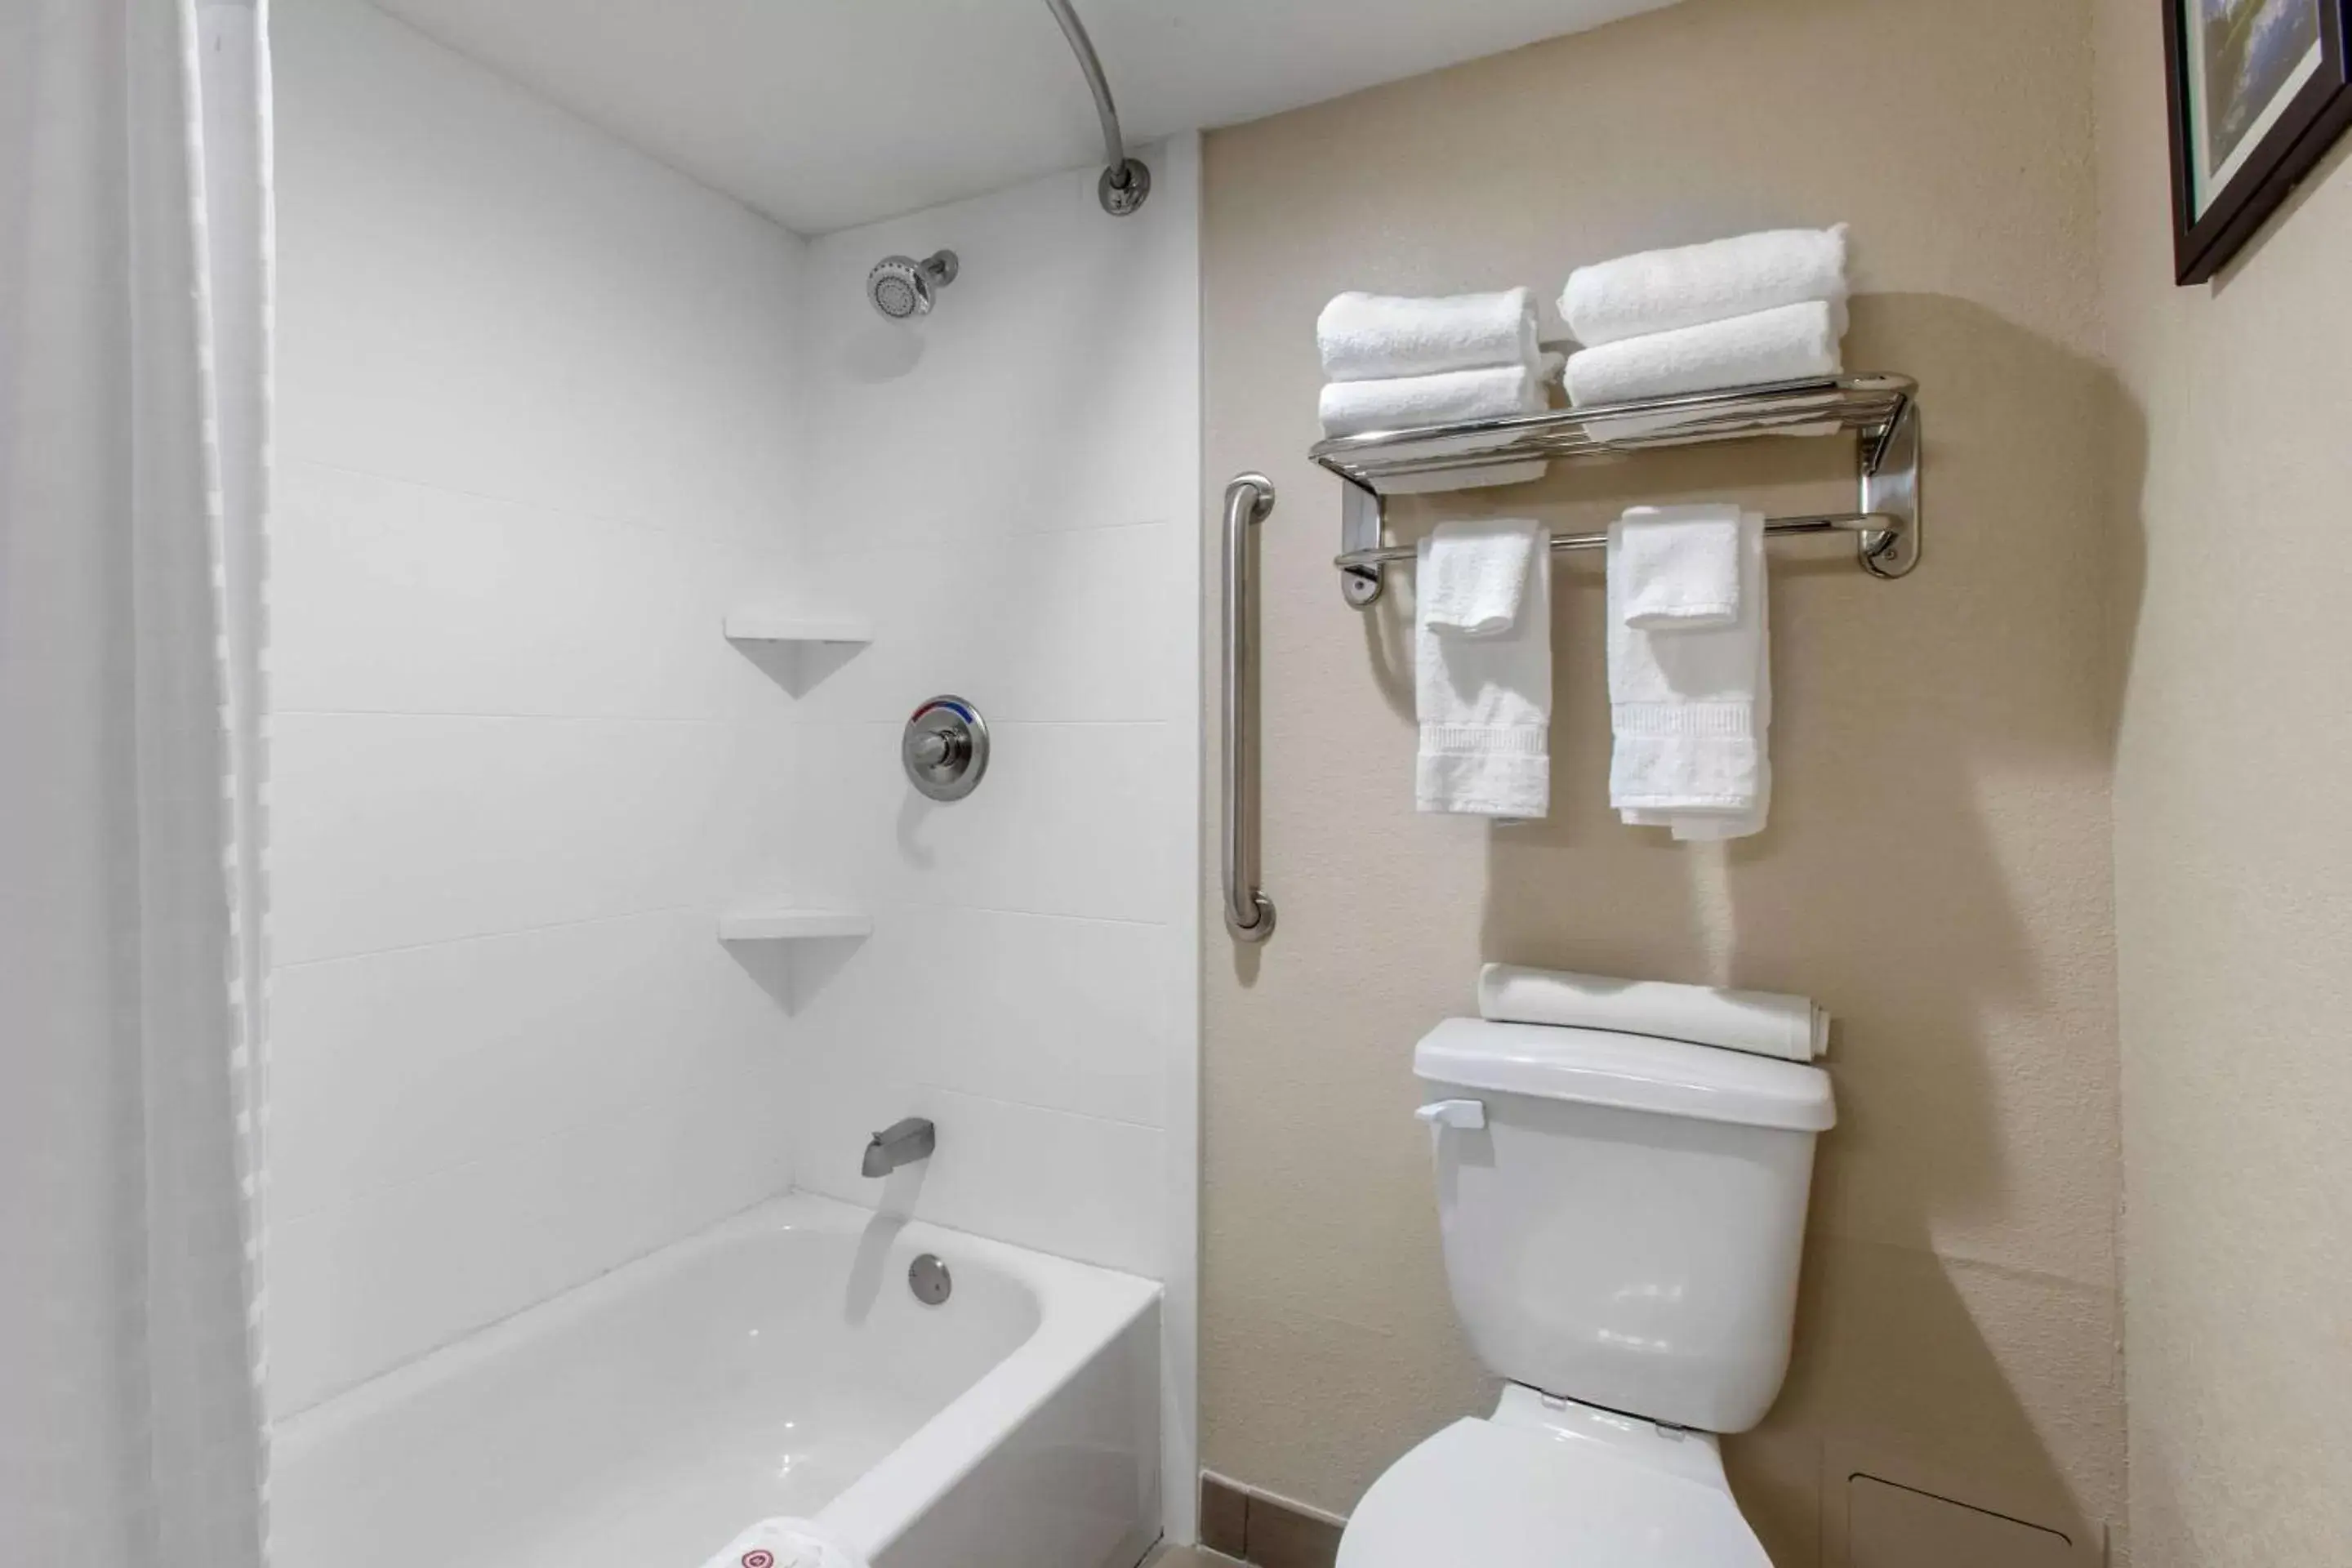 Bathroom in Comfort Inn & Suites Pinetop Show Low